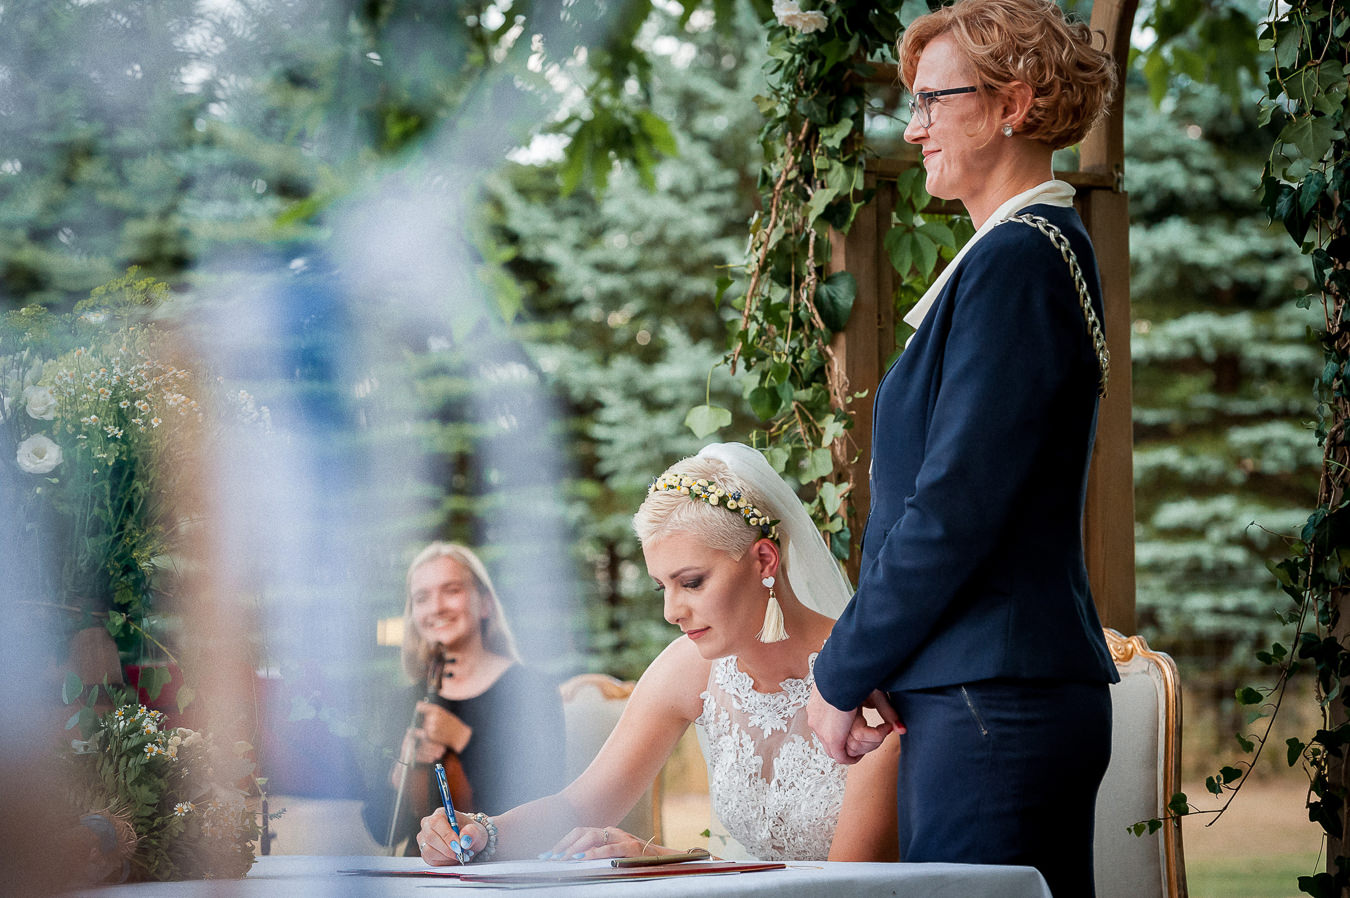 moment podpisania dokumentów po zawarciu związku małżeńskiego w otoczeniu przyrody